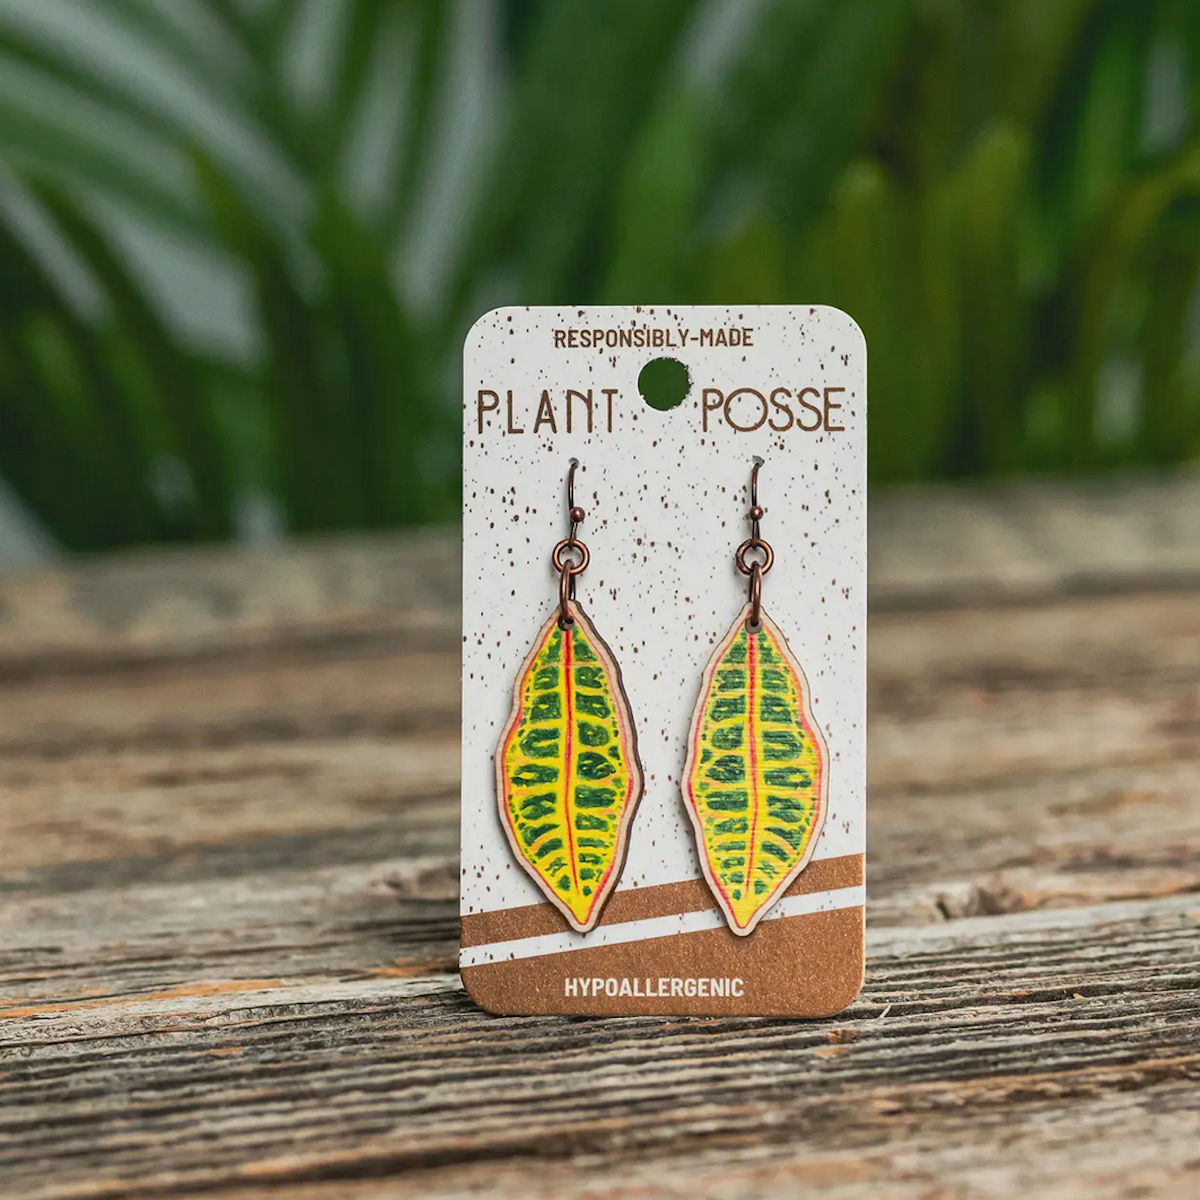 Plant Posse Croton Dangle Earrings